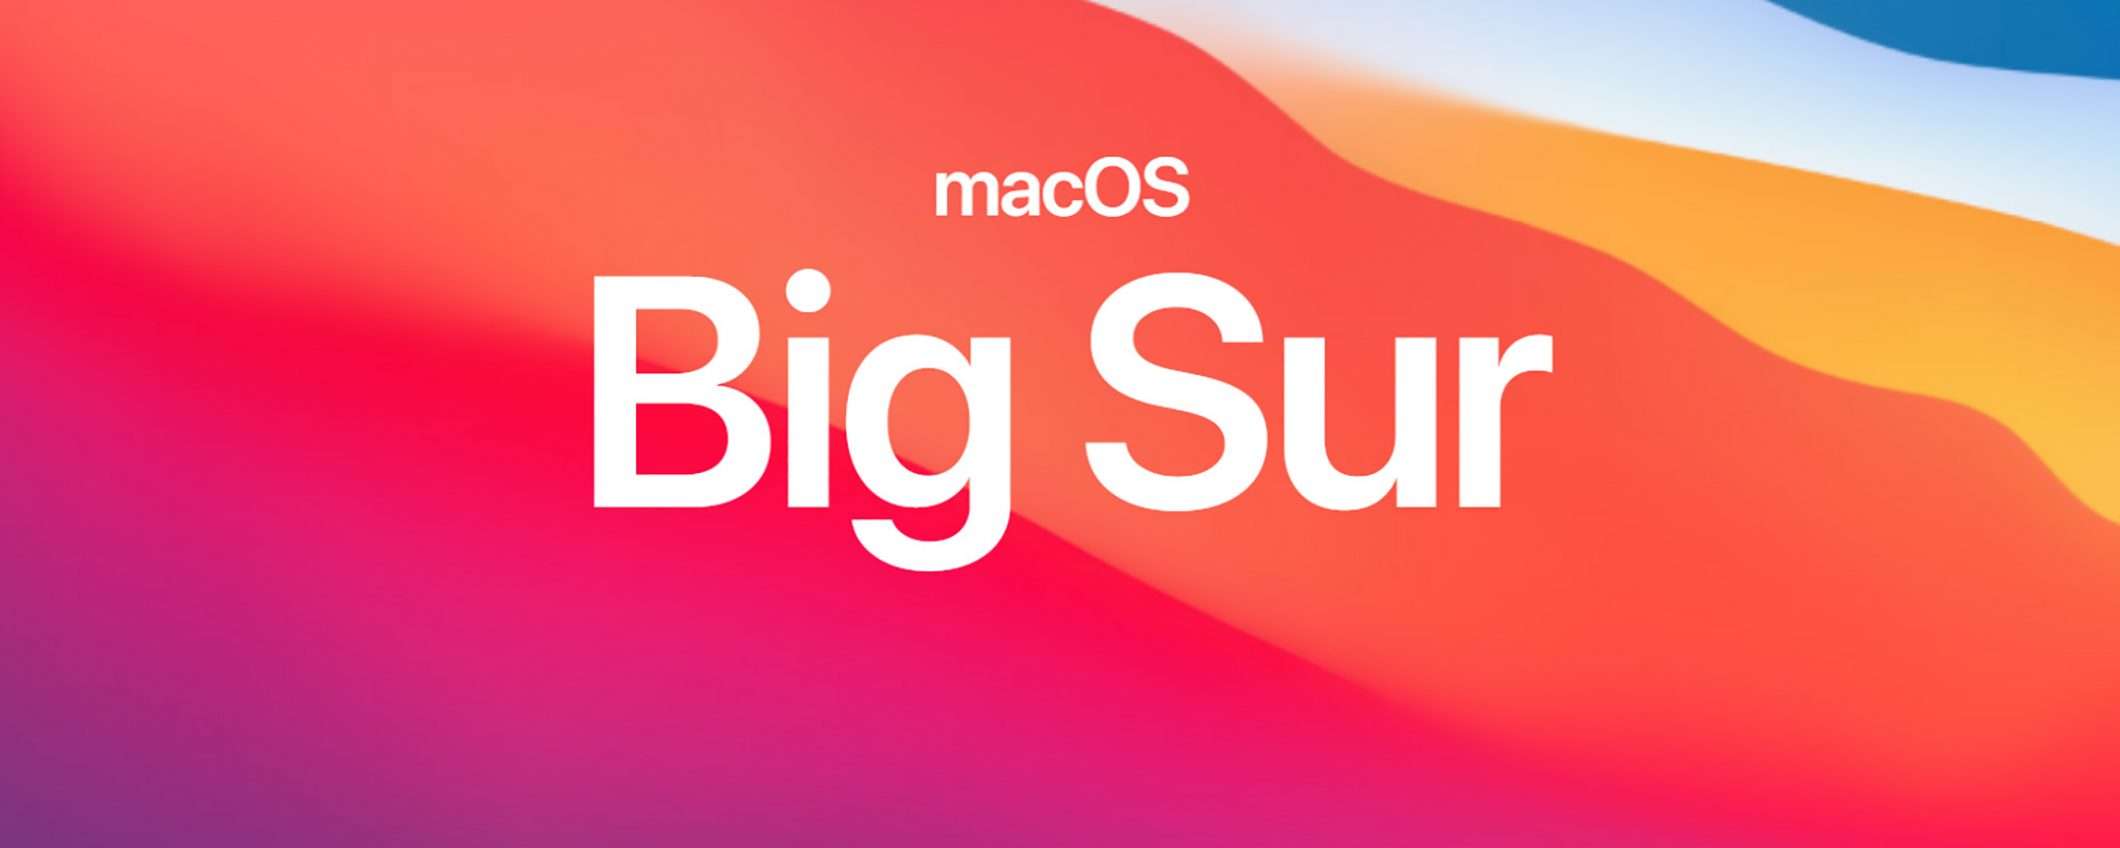 Aggiornamenti più veloci con macOS 11 Big Sur